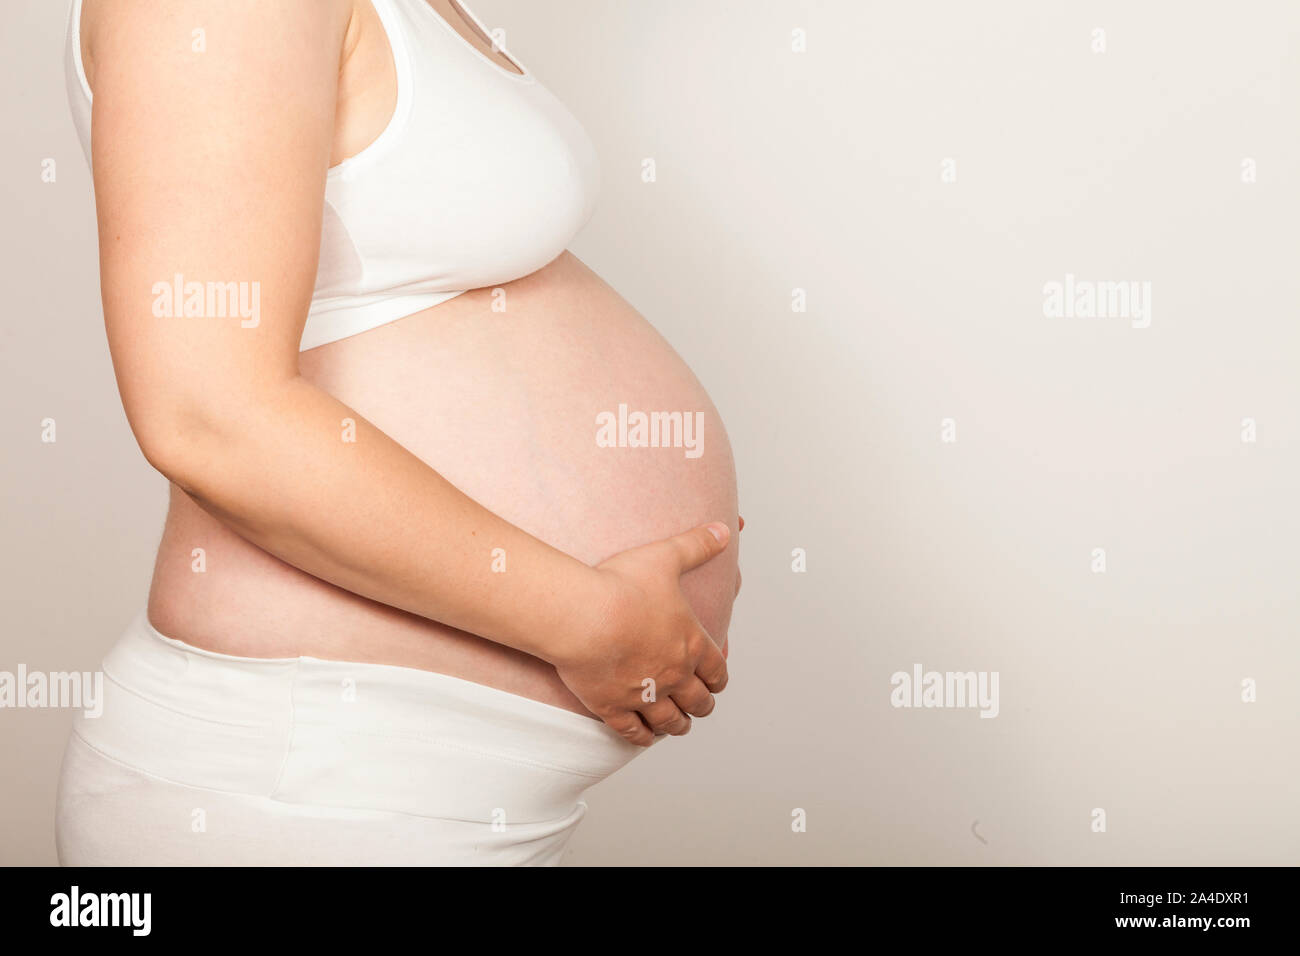 El vientre de una mujer embarazada Foto de stock